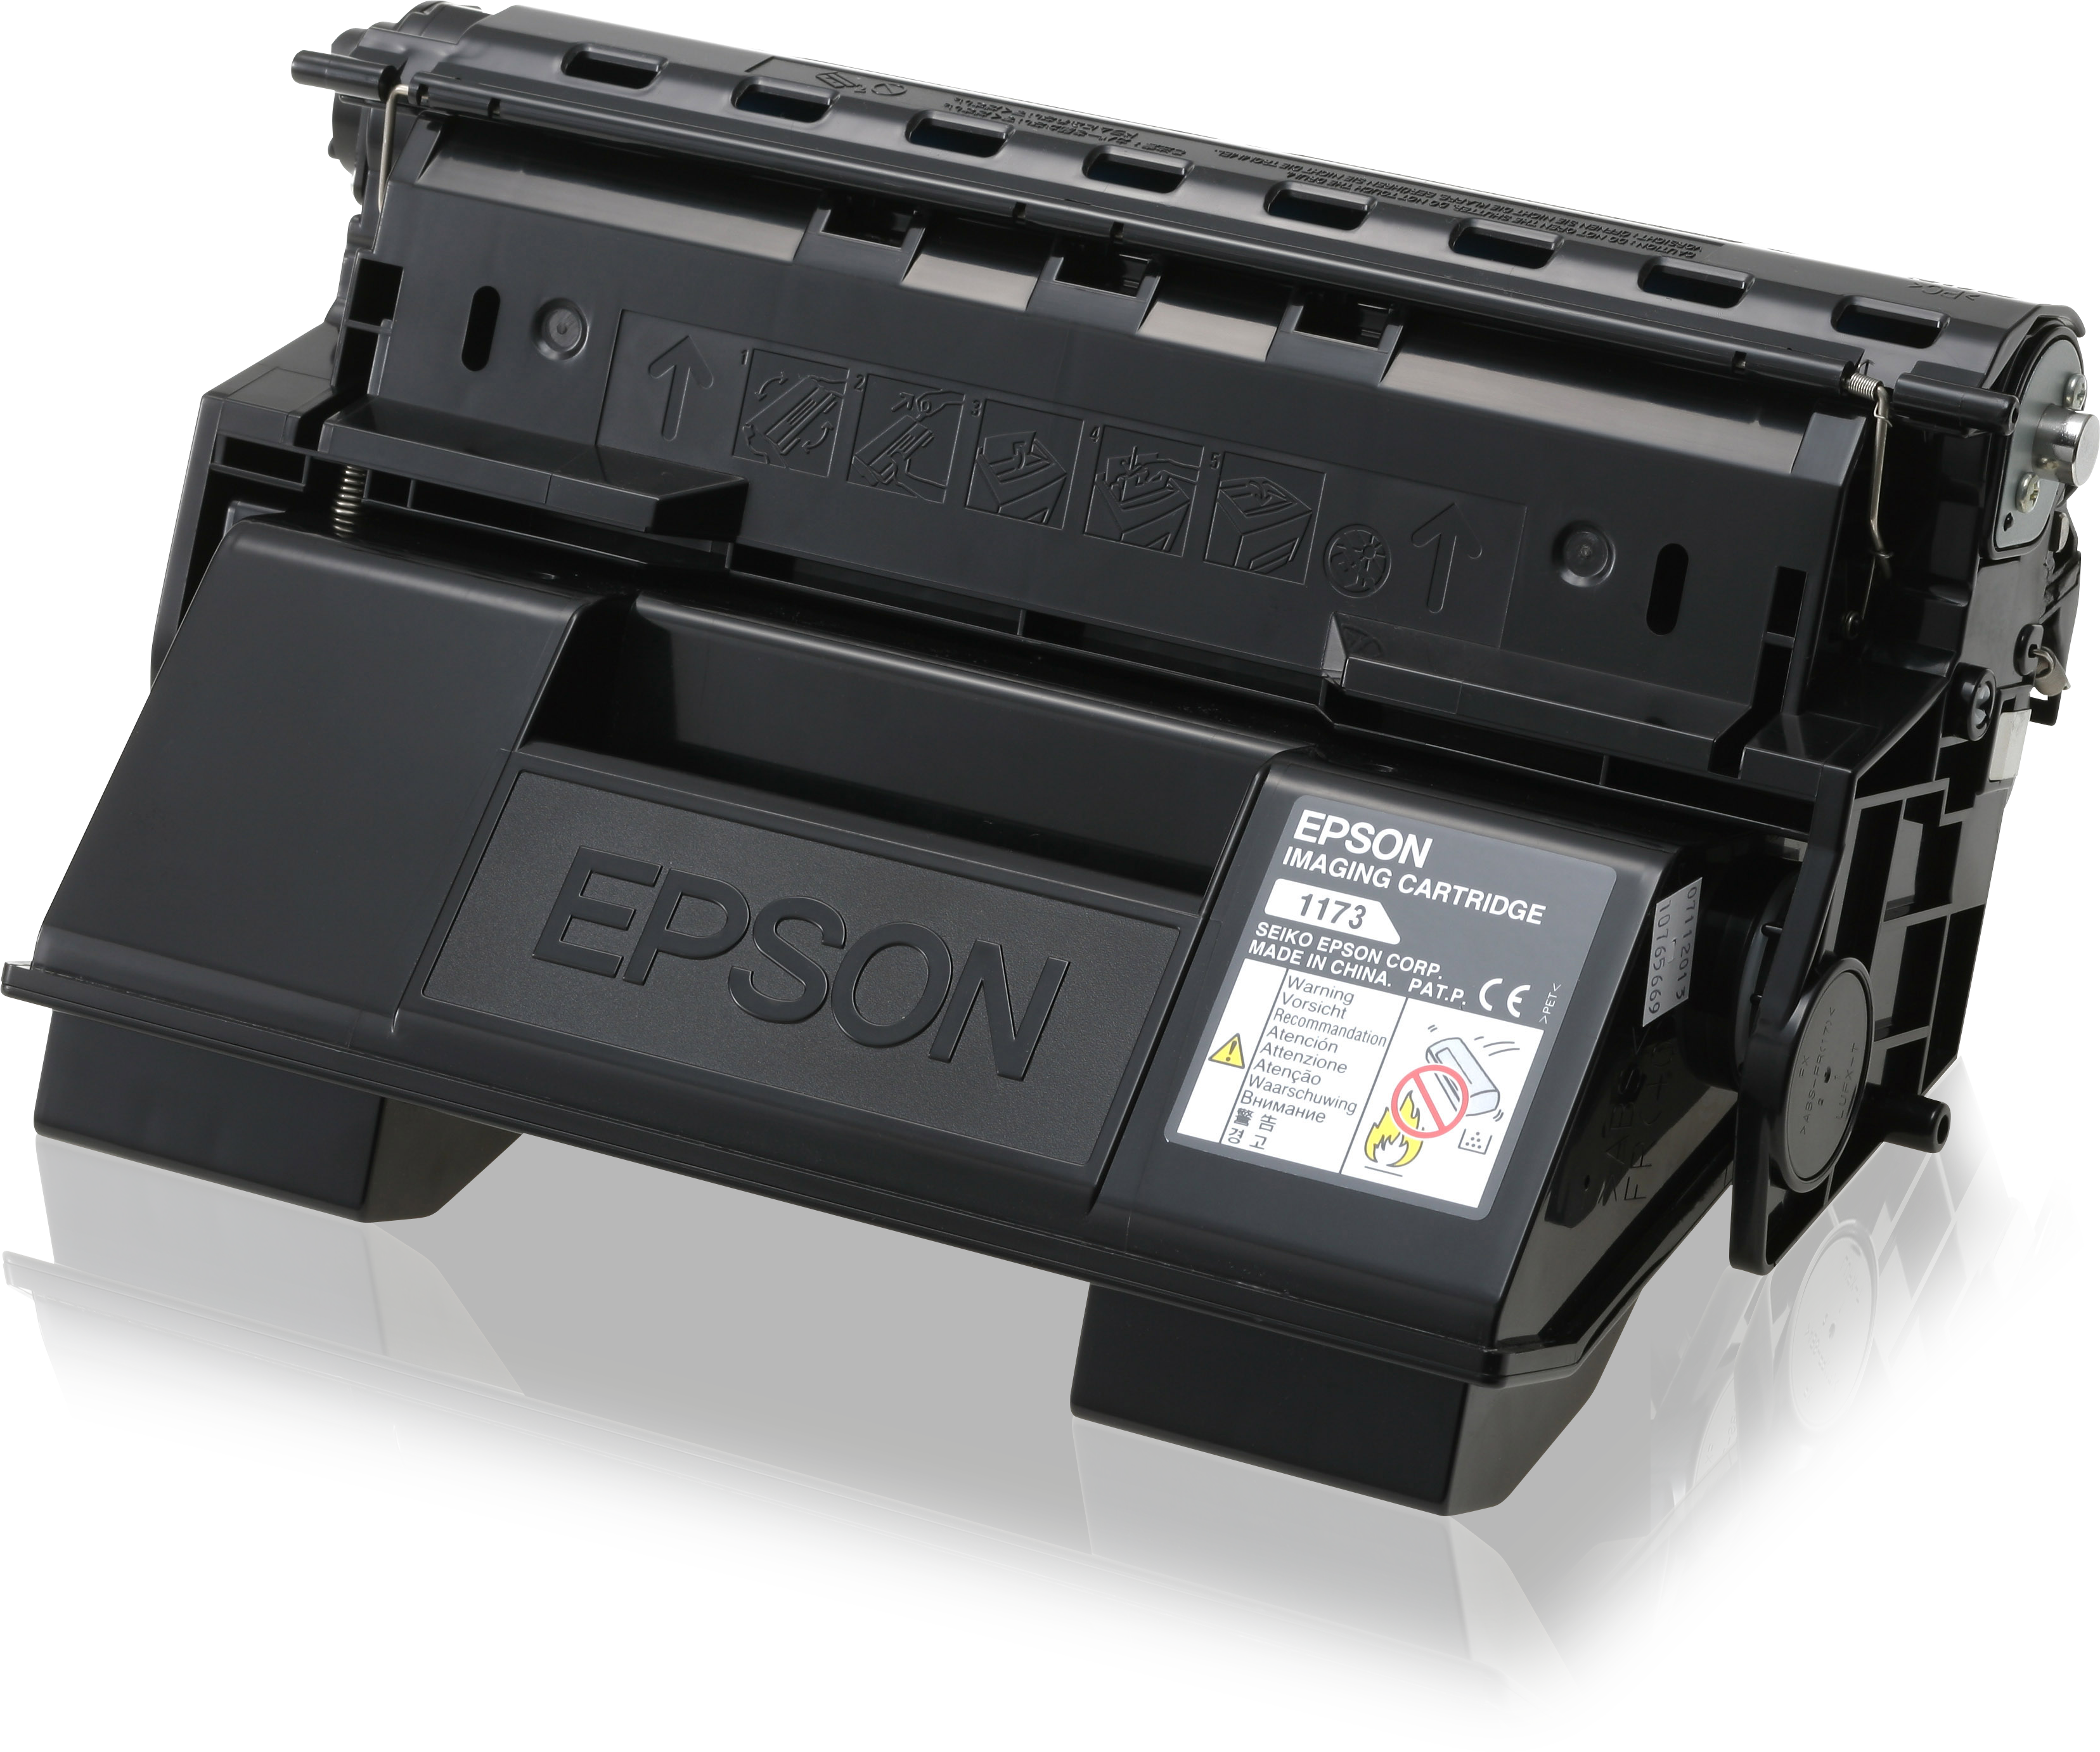 Epson Return Imaging Cartridge S051173